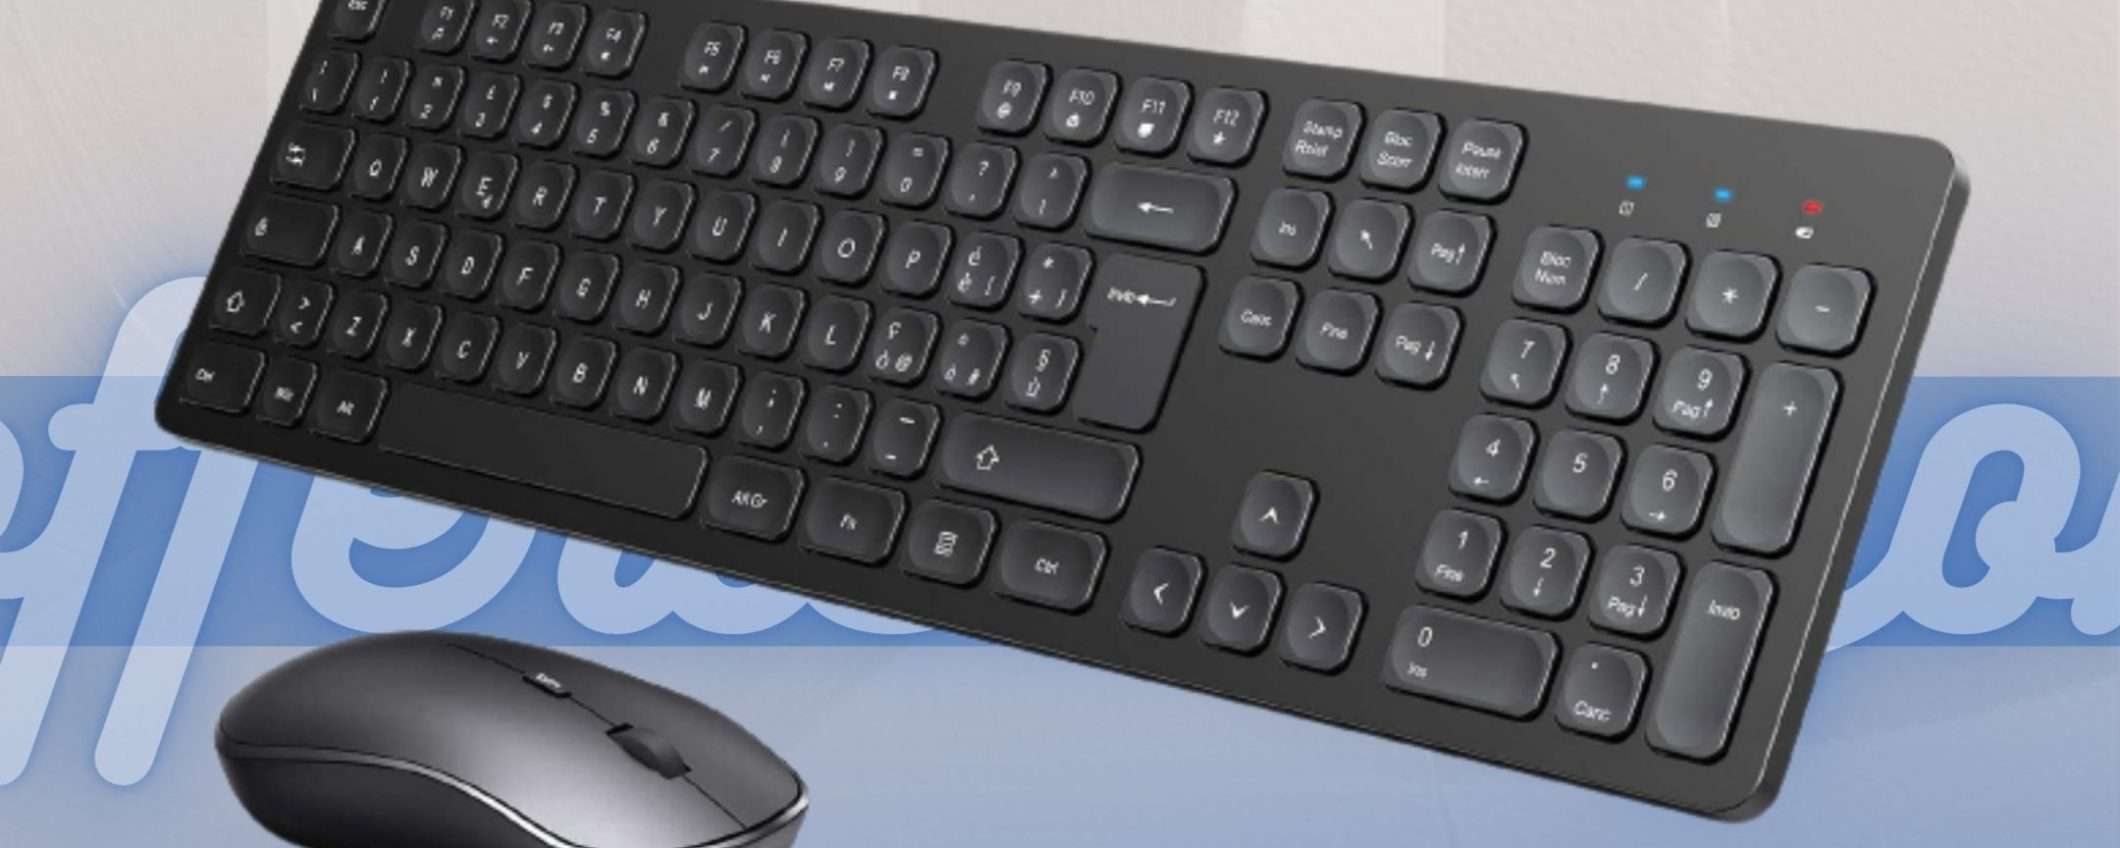 Mouse e tastiera: il kit ti costa solo 12,99€ su Amazon